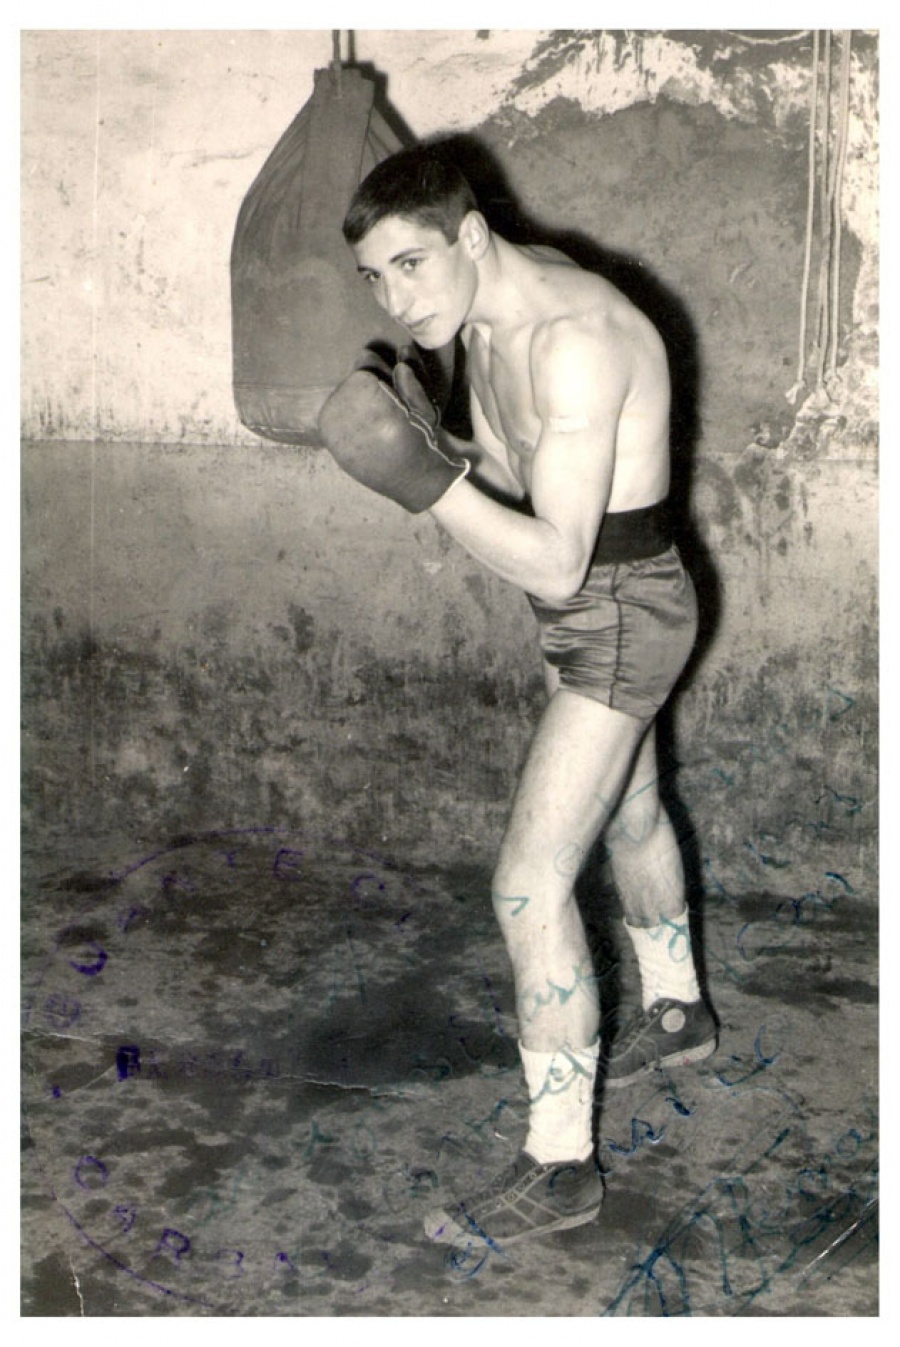 1964 - Boxeador amateur